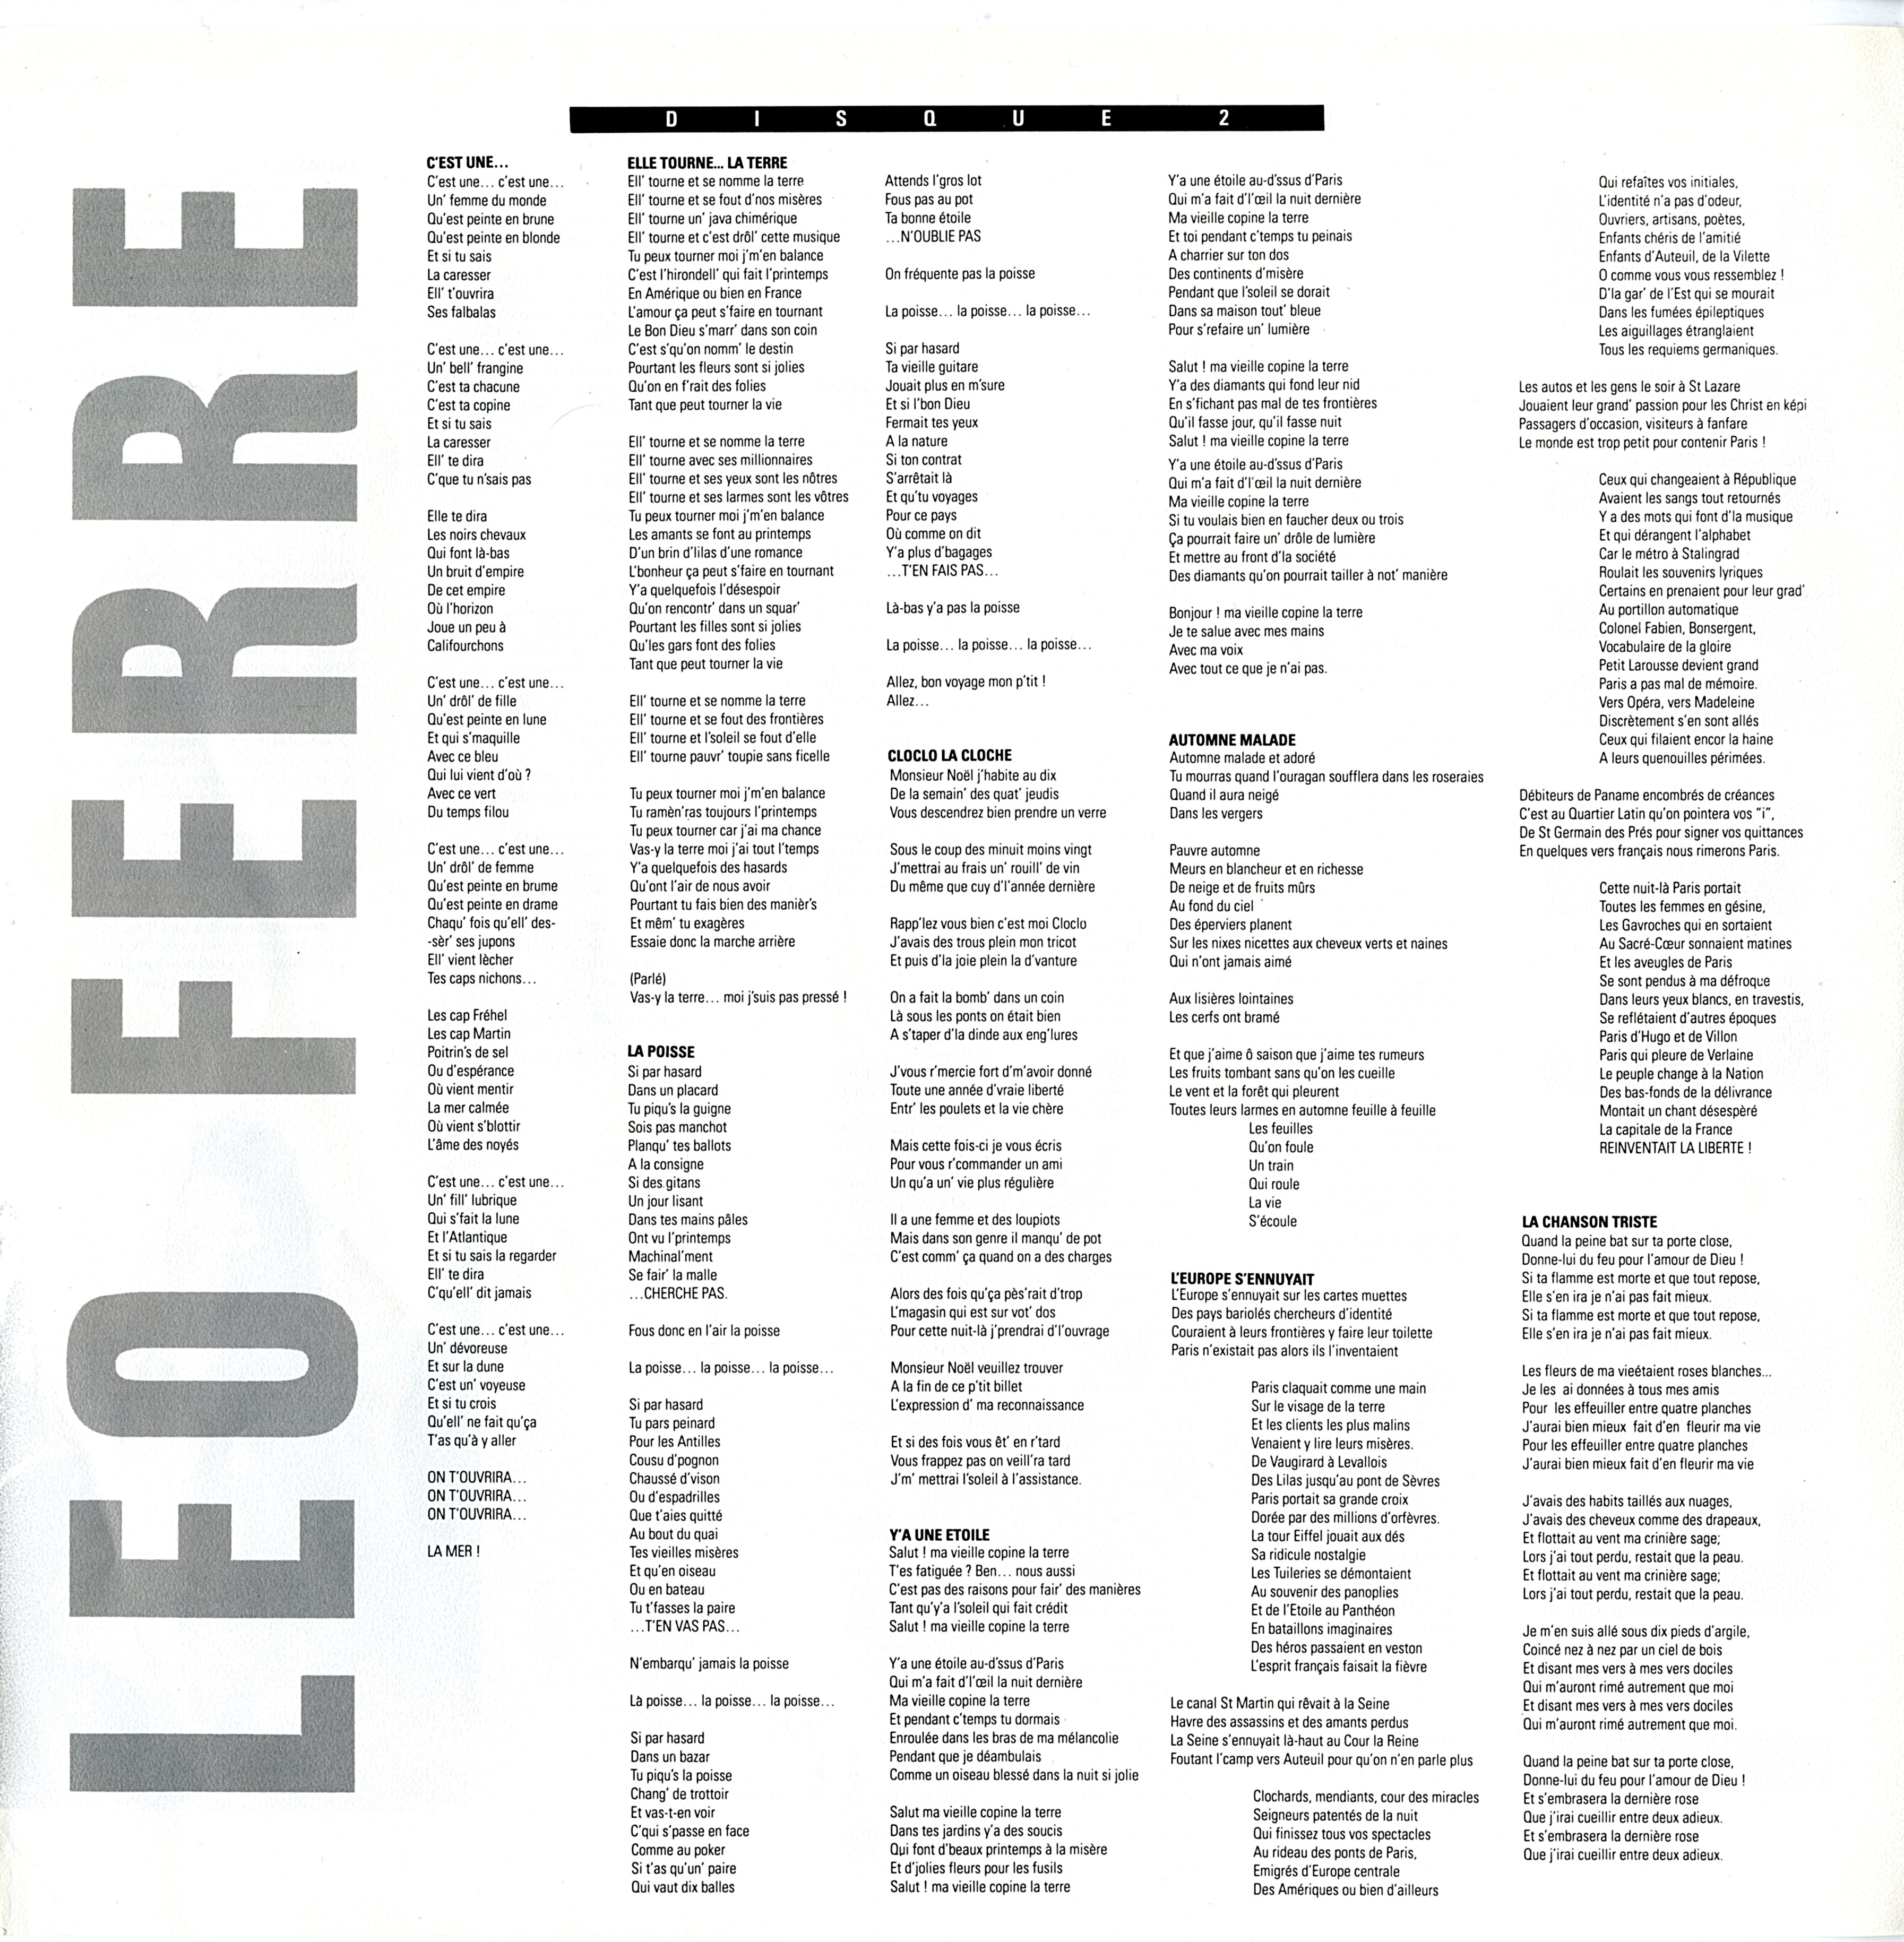 Léo Ferré - Les vieux copains